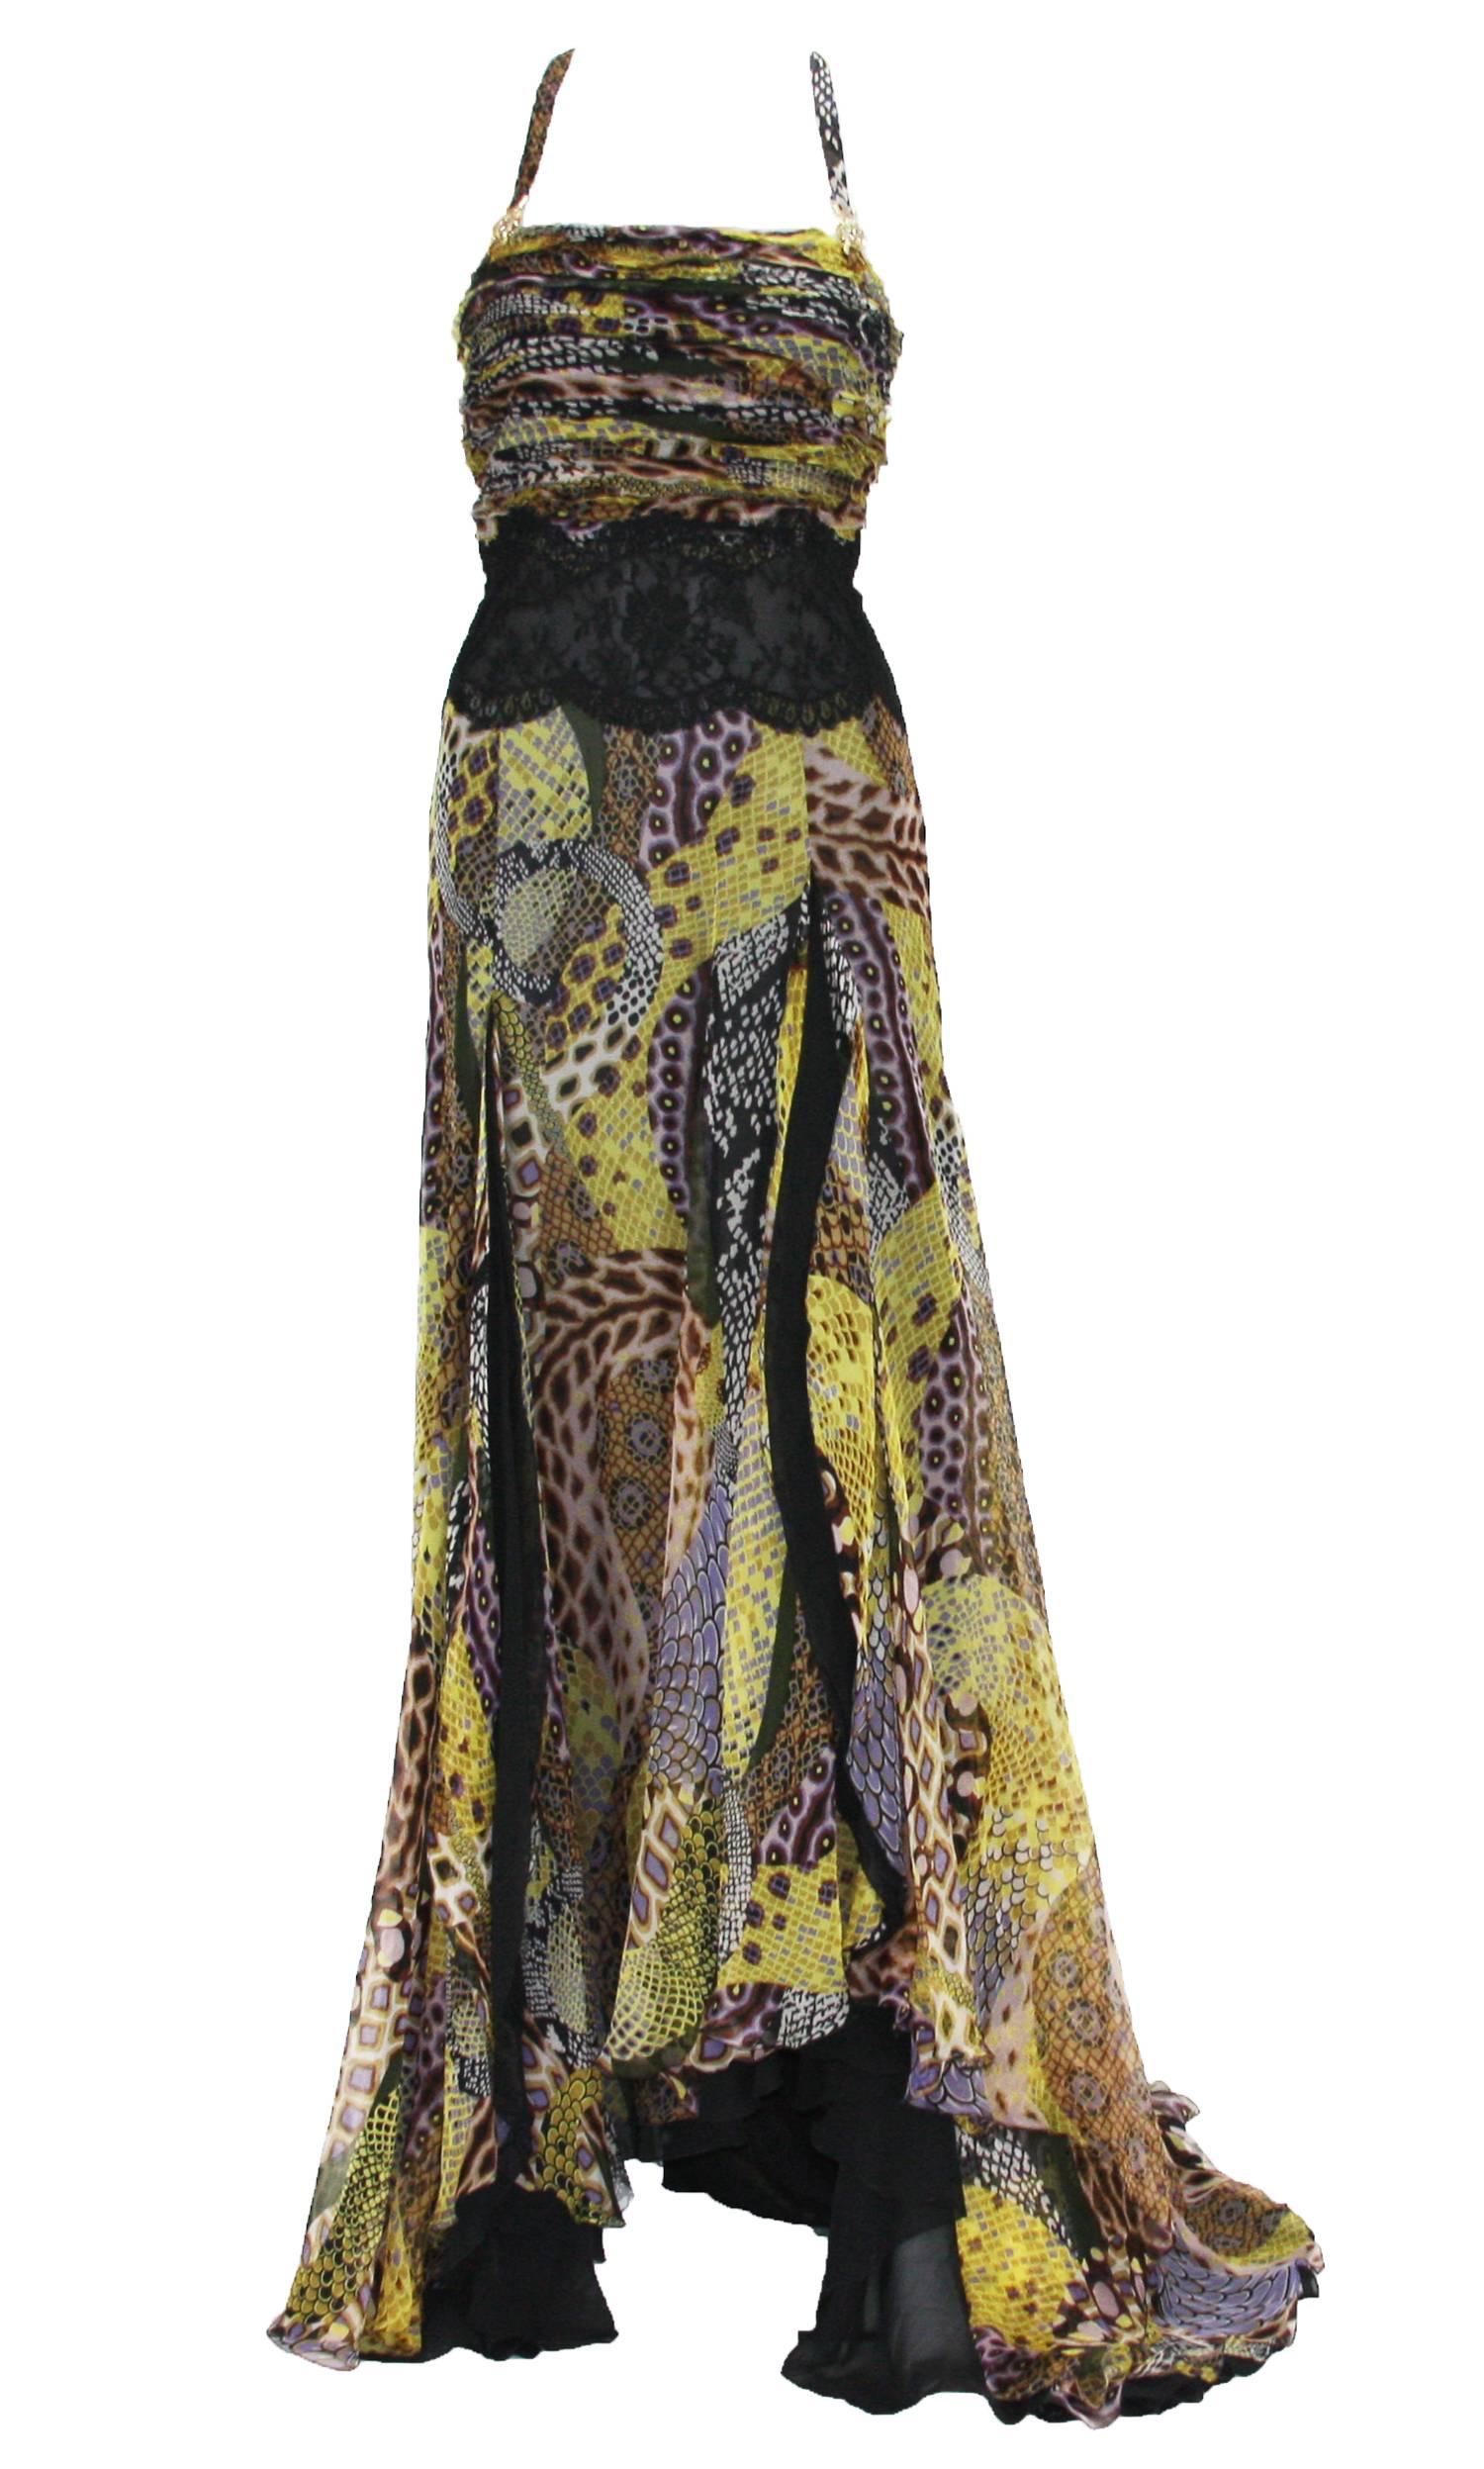 Robe en soie imprimée serpent de la Collection S de Versace 2005
Taille italienne 44 - US 8
Taille en dentelle transparente, décoration Méduse en métal doré
Entièrement doublé en soie noire, fermeture à glissière sur le côté
Deux fentes sexy sur le